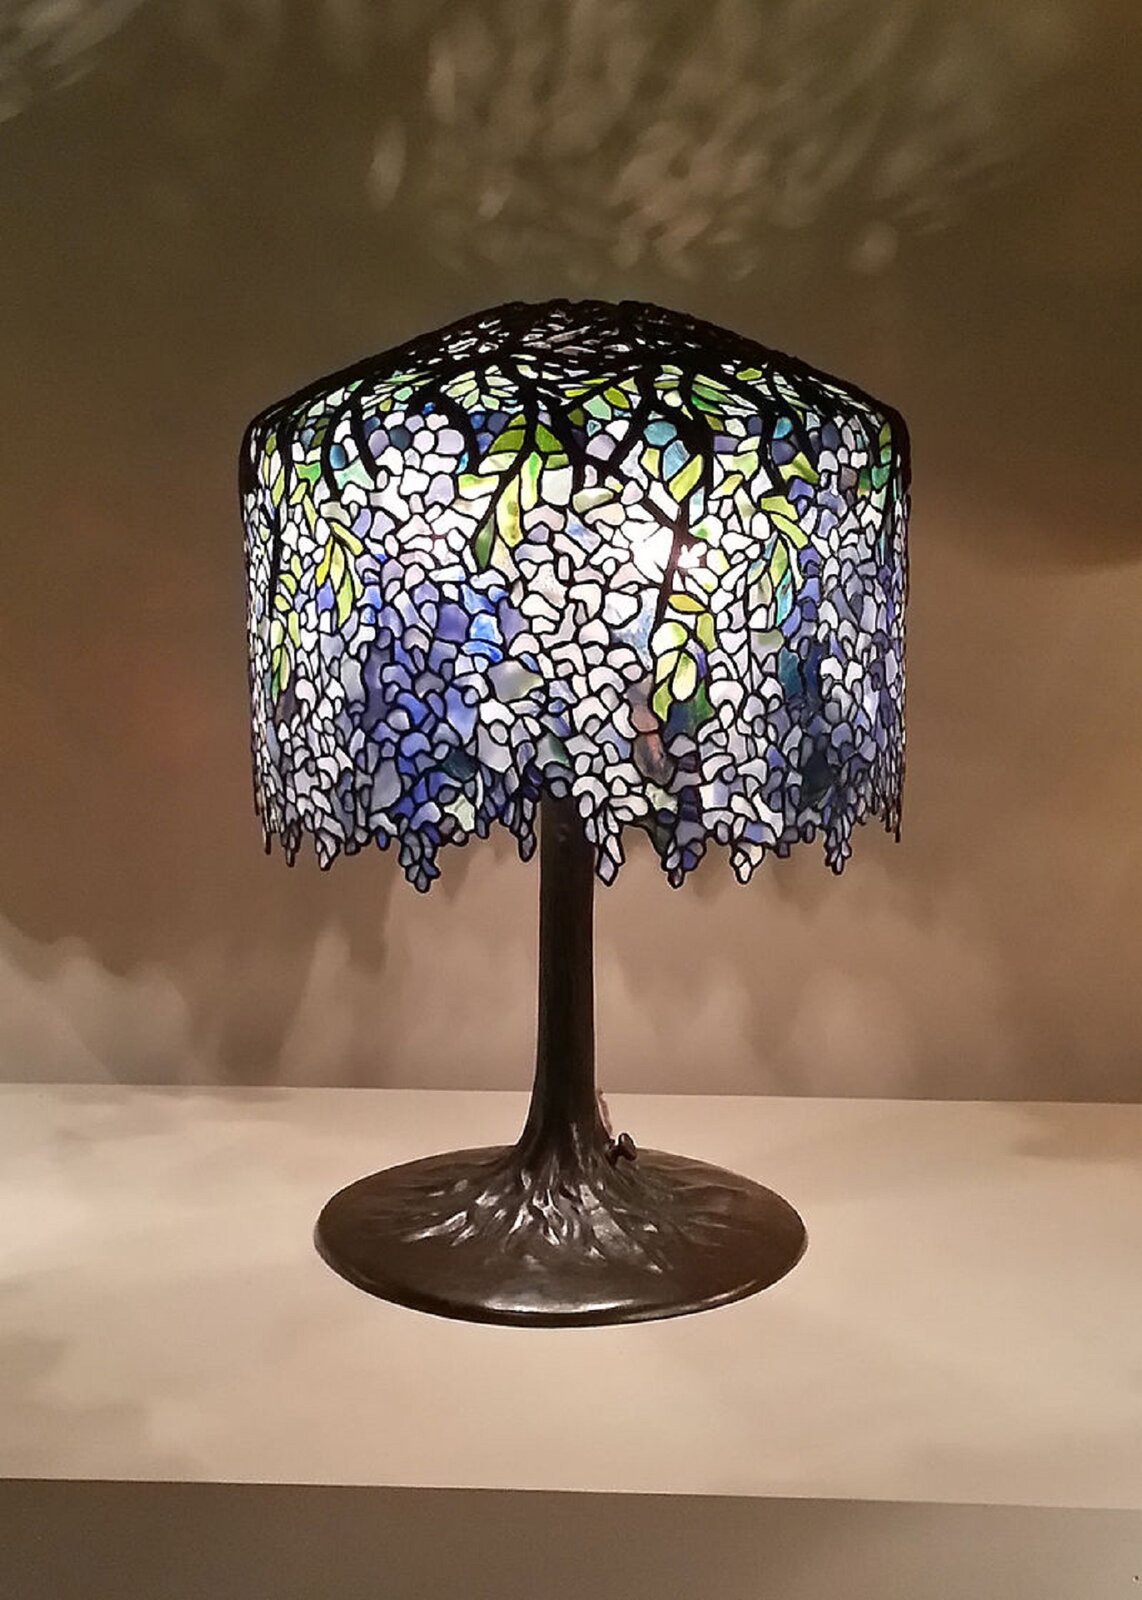 Fotografia przedstawia Lampę witrażową autorstwa Louisa Comfort Tiffanyego. Lampa stoi na szarym stole, ma okrągłą podstawkę, brązowy pałąk oraz witrażowy kolorowy klosz, na którym dominują barwy jasne oraz zielone. W górnej części lampa ma czarne zdobienia.